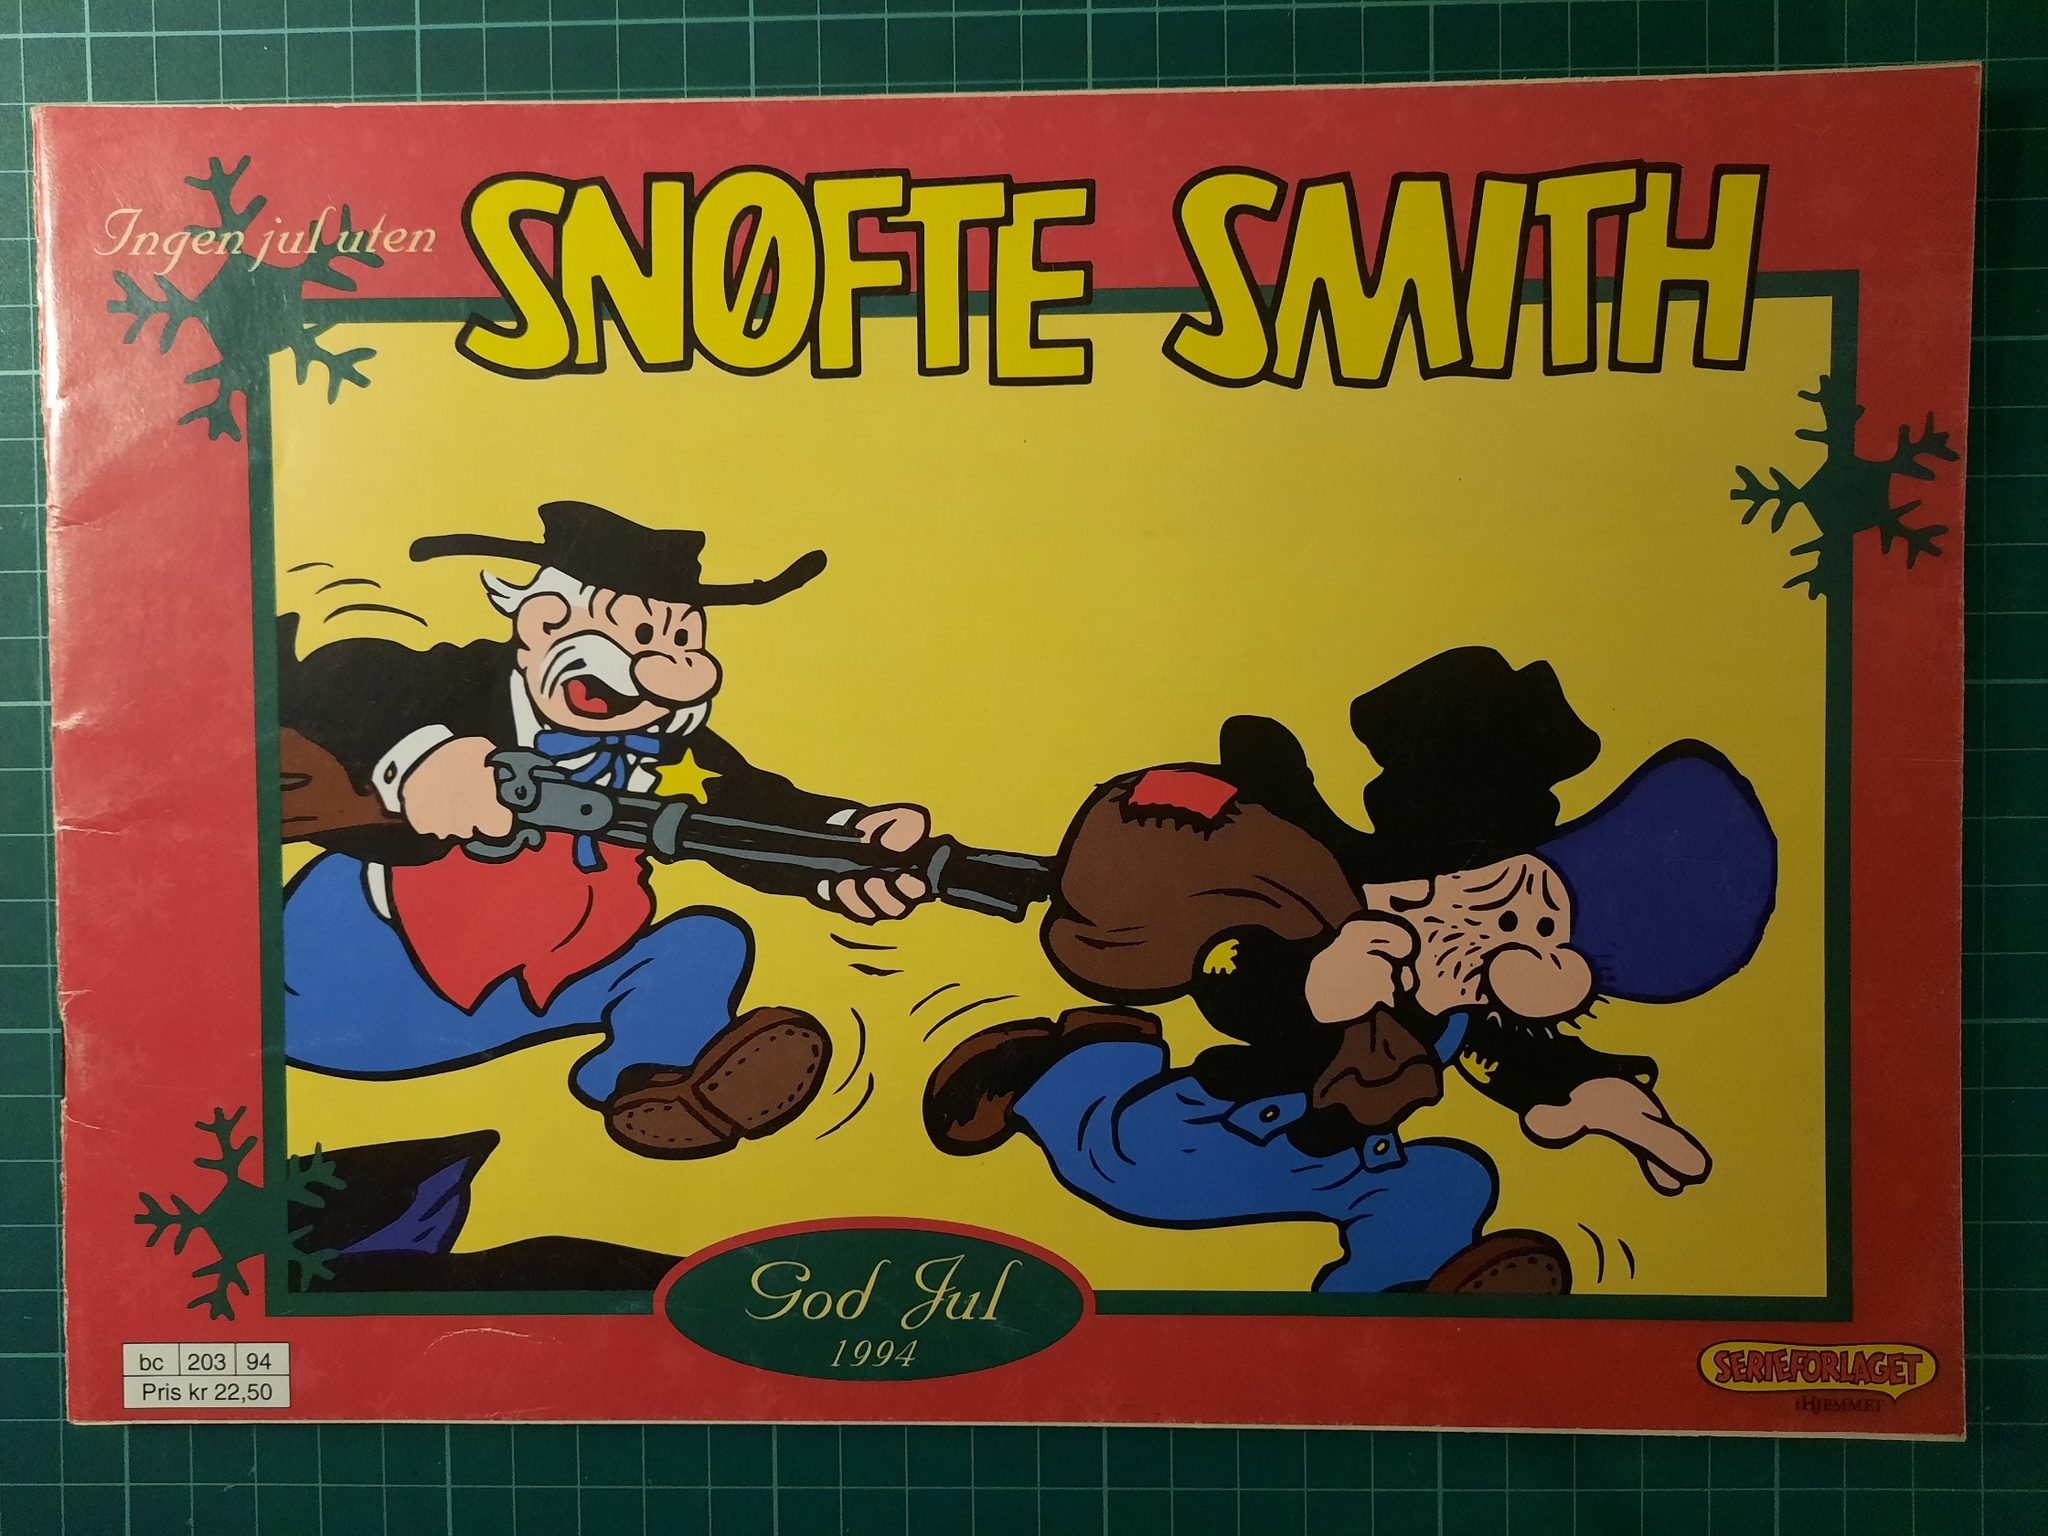 Snøfte Smith 1994